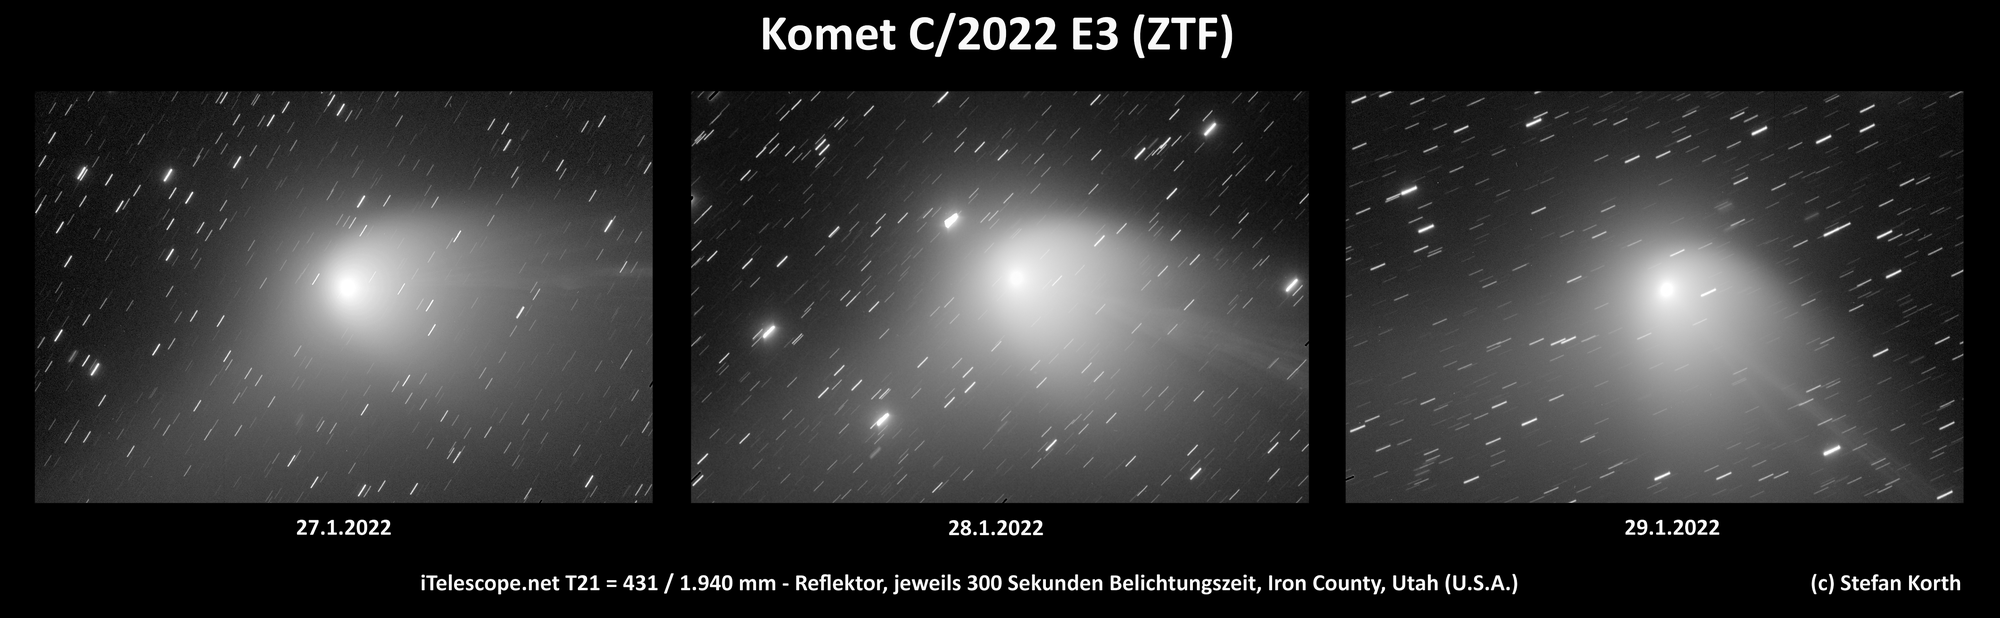 Komet C/2022 E3 (ZTF) im Dreitagesvergleich